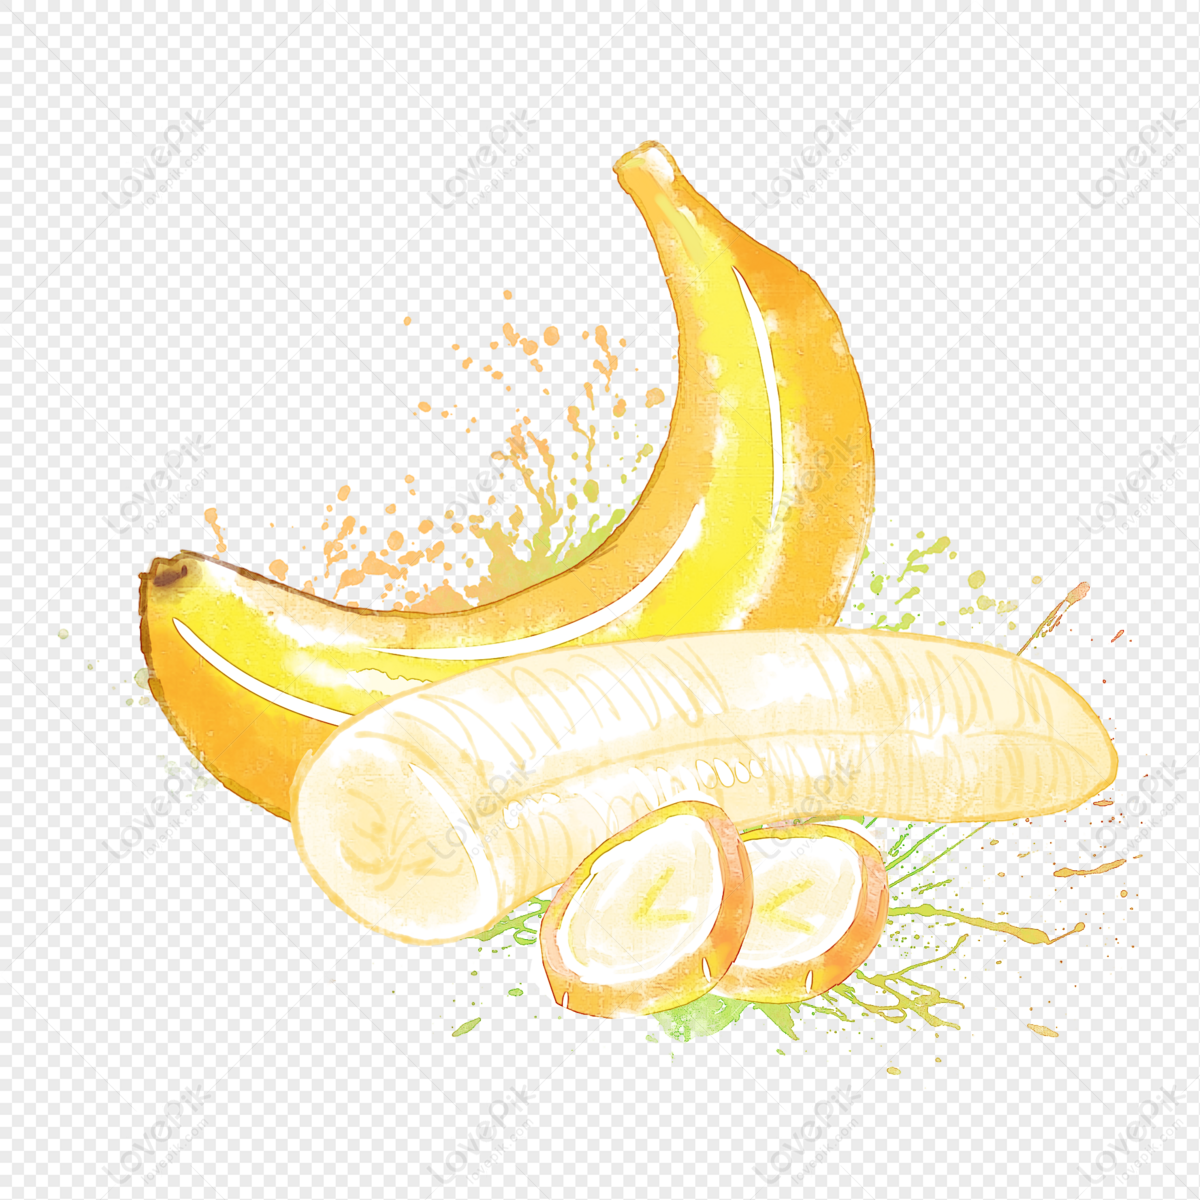 Hình ảnh Banana Vẽ Tay Màu Nước PNG Miễn Phí Tải Về - Lovepik